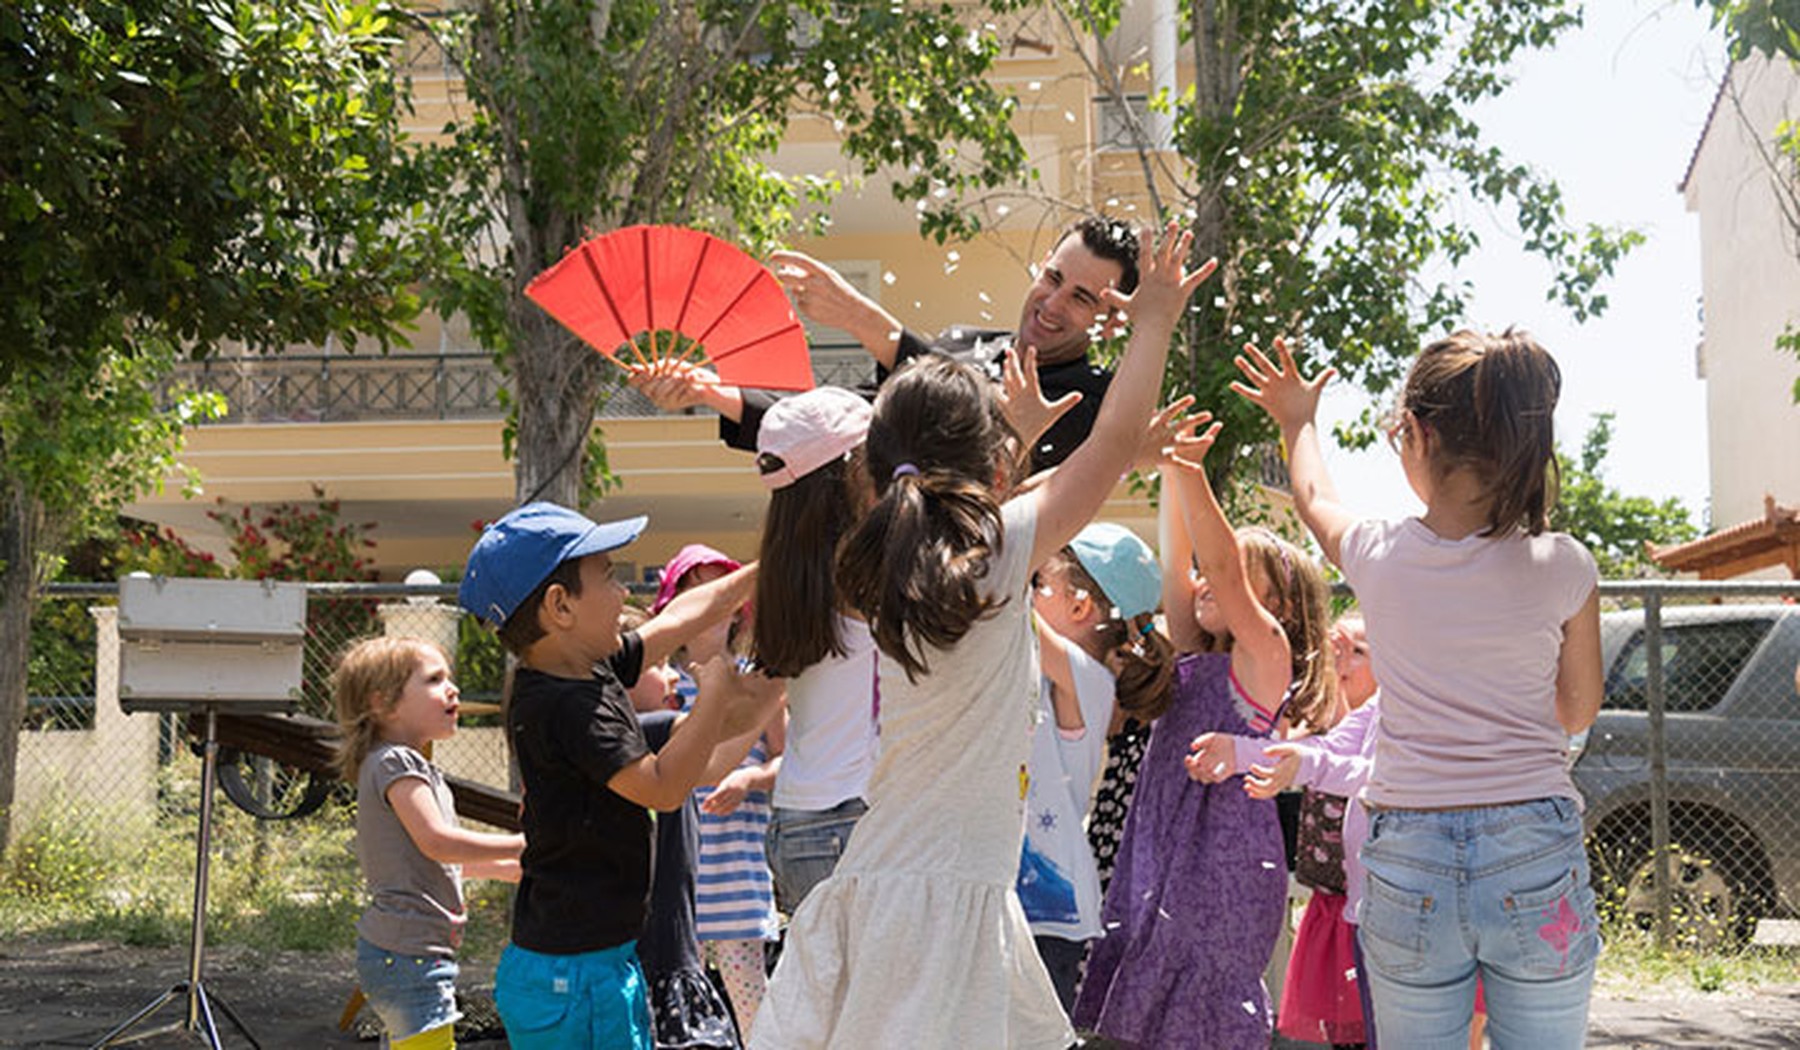 Hombre haciendo un espectáculo en una fiesta de niños. El hombre tiene un abanico rojo en la mano y los niños saltan a su alrededor.